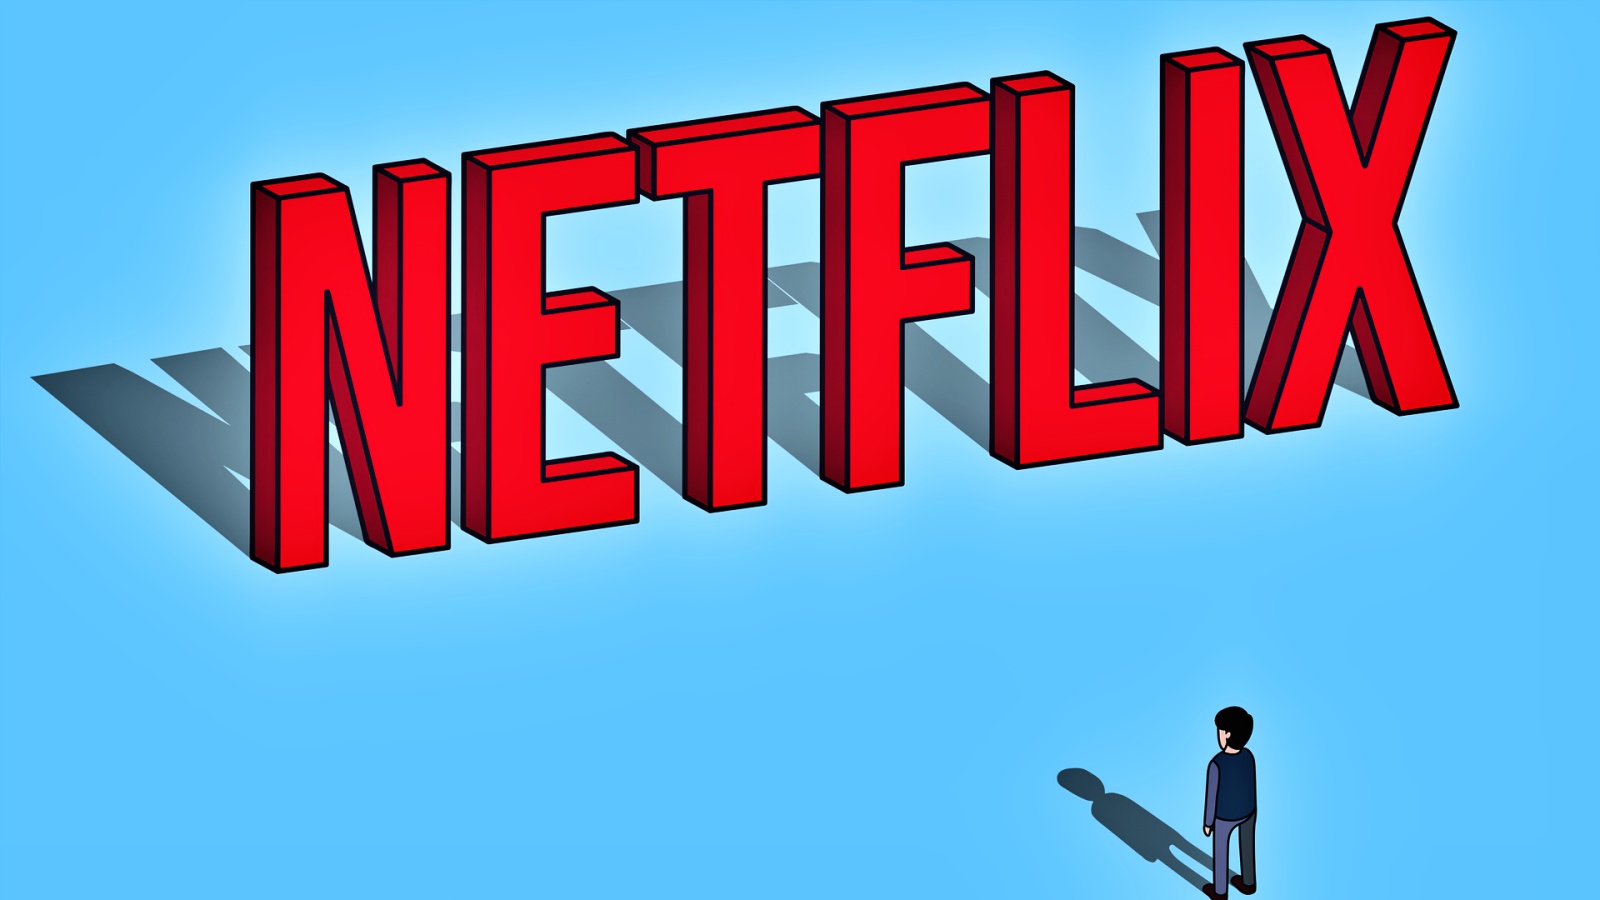 Le popolari serie Netflix hanno segnato grossi problemi di produzione